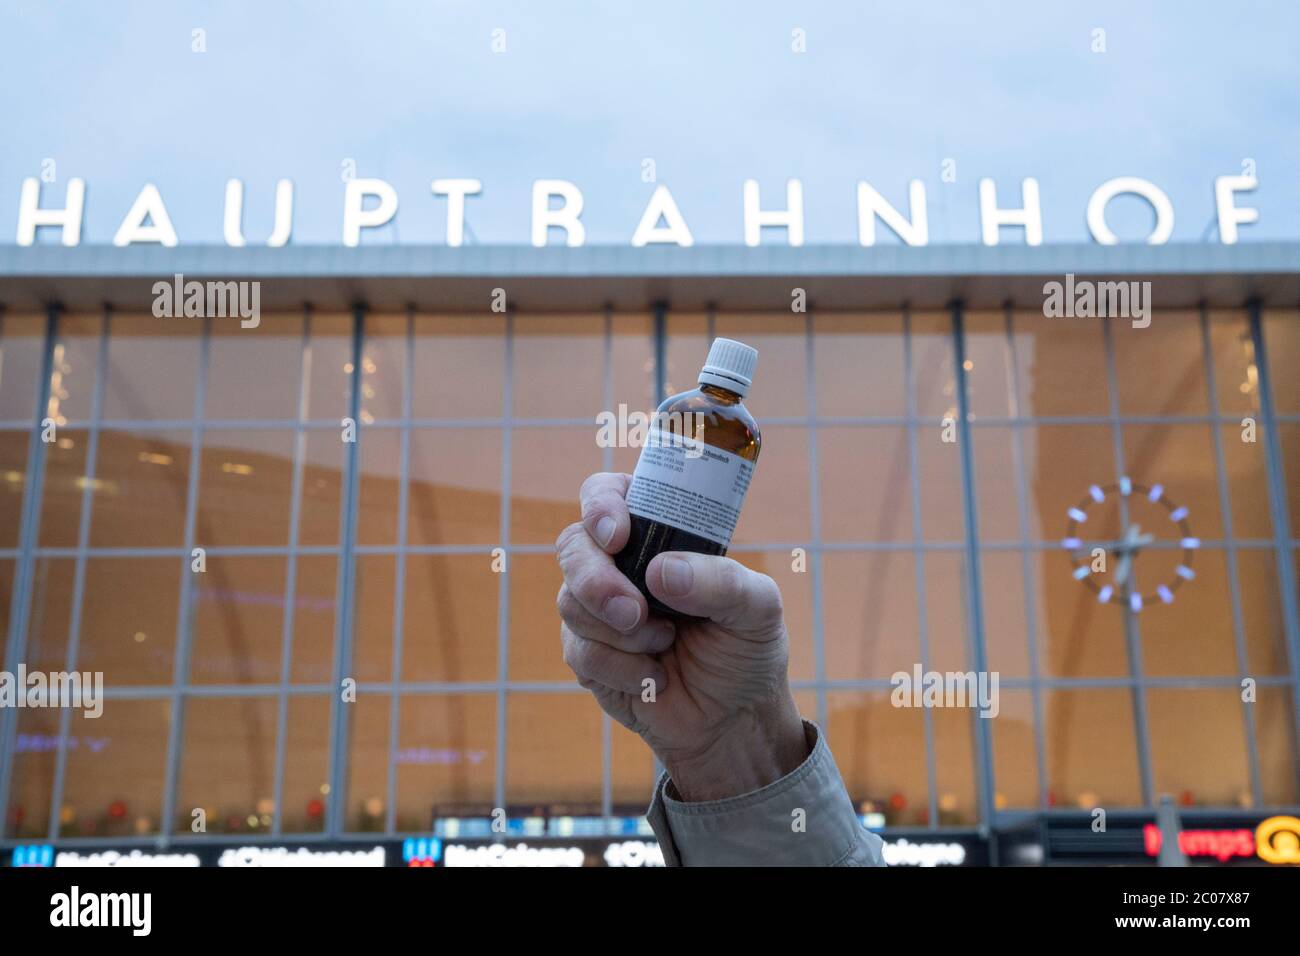 Etanolo-Flasche als Desinfizierungssmittel zur Auswirkung des Coronavirus. Köln, 19.03.2020 Foto Stock